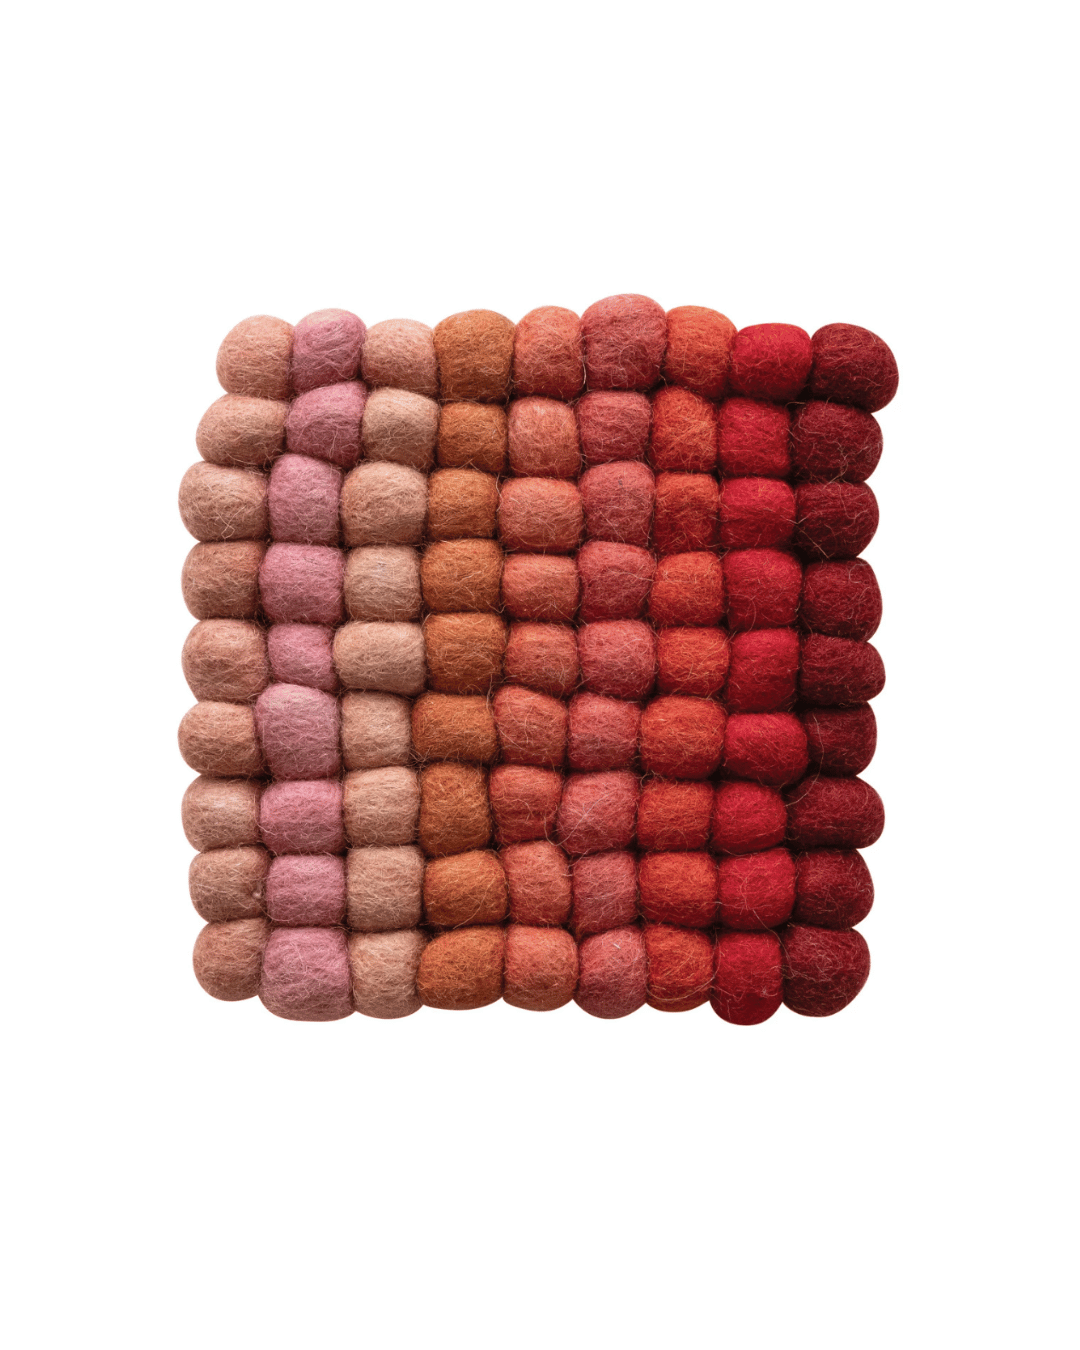 Handmade Wool Felt Ball Trivet, Multi Color Red